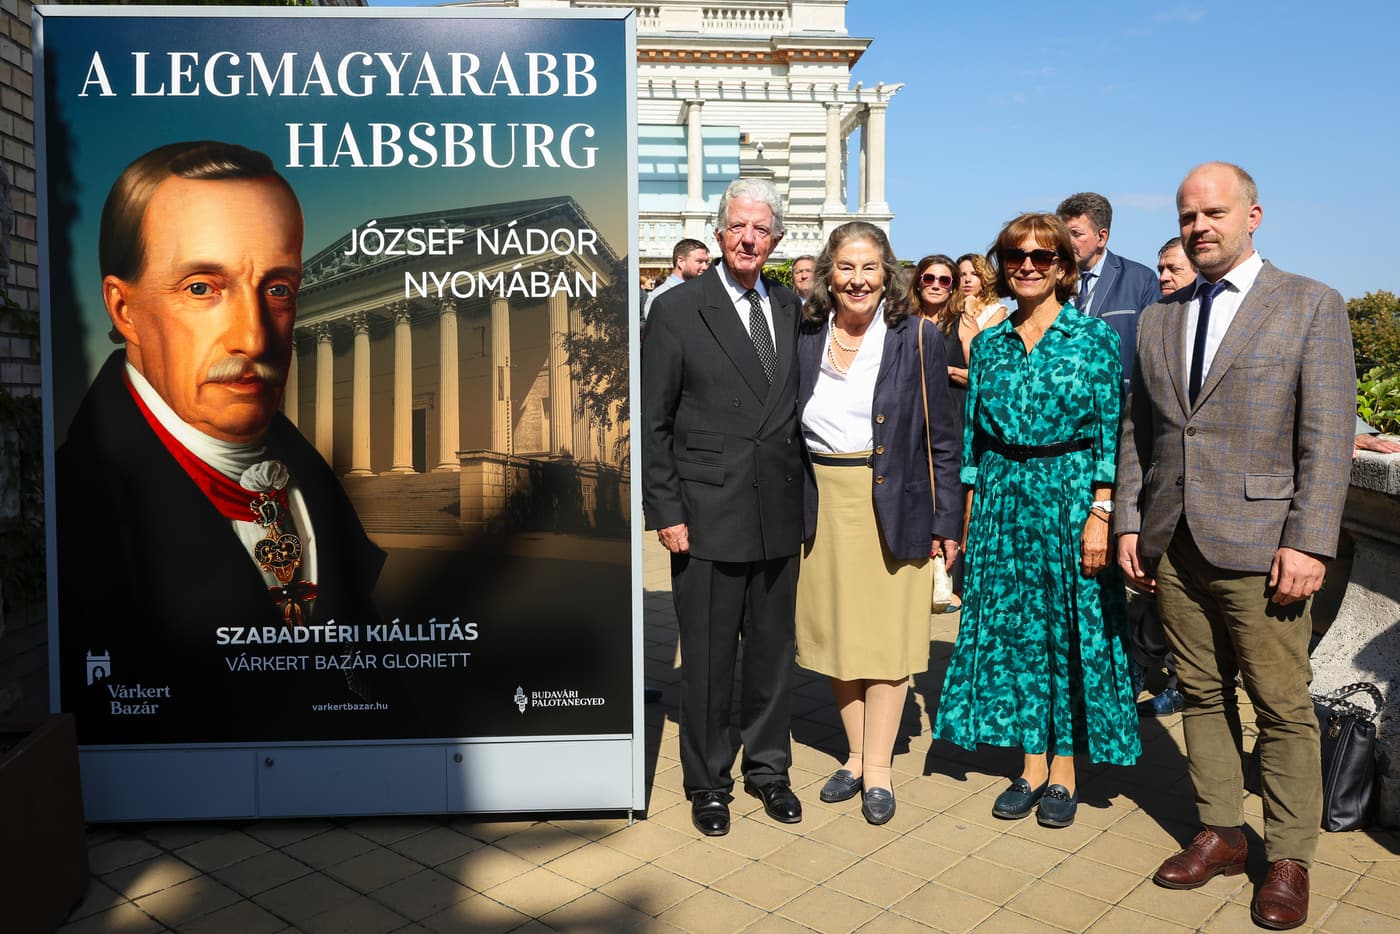 Szabadtéri kiállítás nyílt a Várkert Bazárban József nádorról, a legmagyarabb Habsburgról